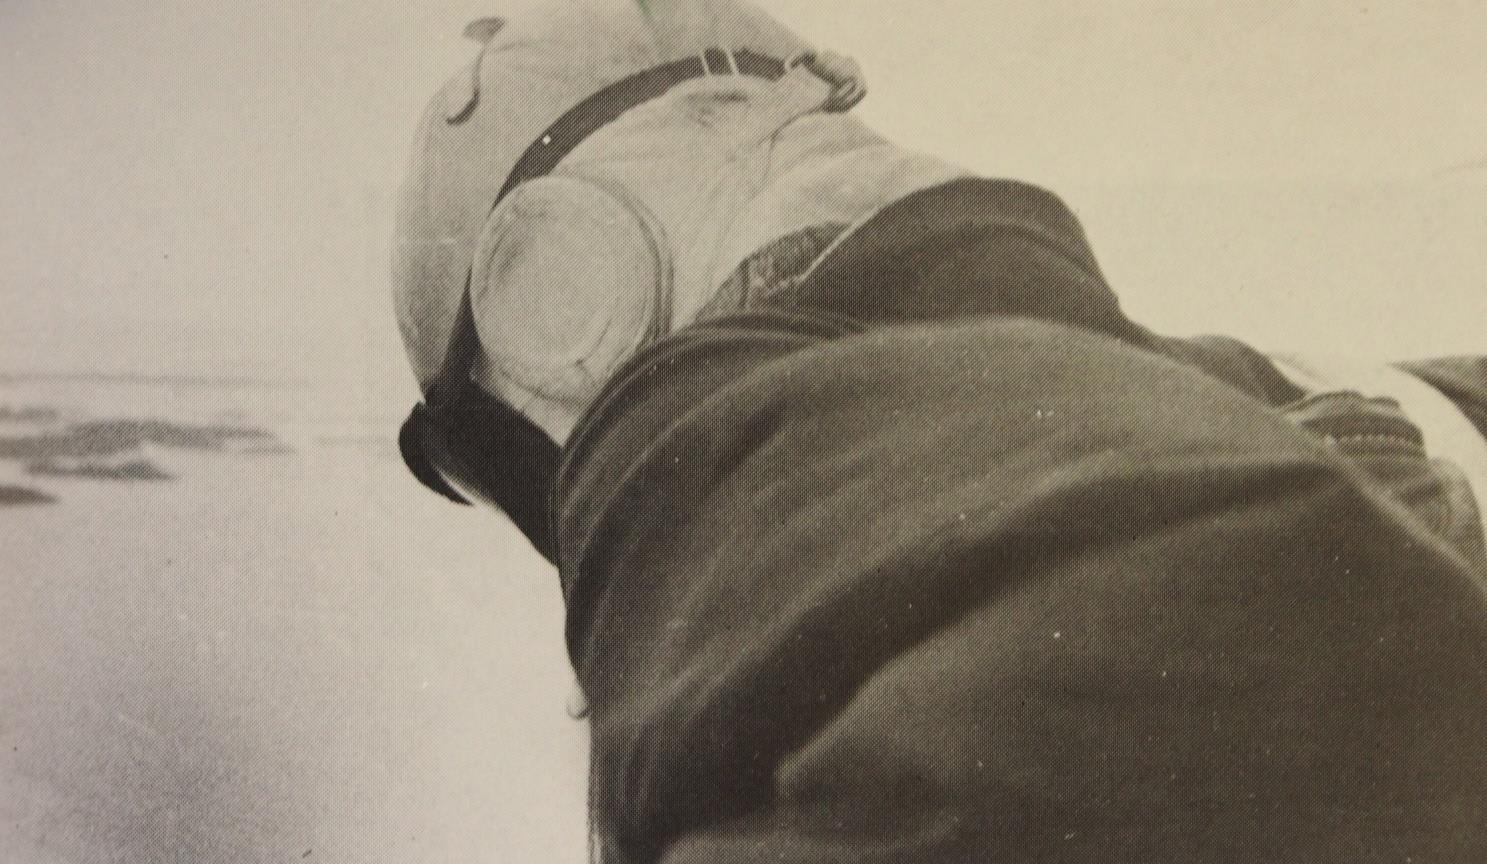 Eero Pakarinen kuvaa kirjassaan Rautamäkeä rautaiseksi puoliammattilaiseksi, joka suhtautui näytöshyppyihin vakavasti, jonka vuoksi hänelle ei poikkeuksellisen pitkän näytöshyppyuran aikana sattunut